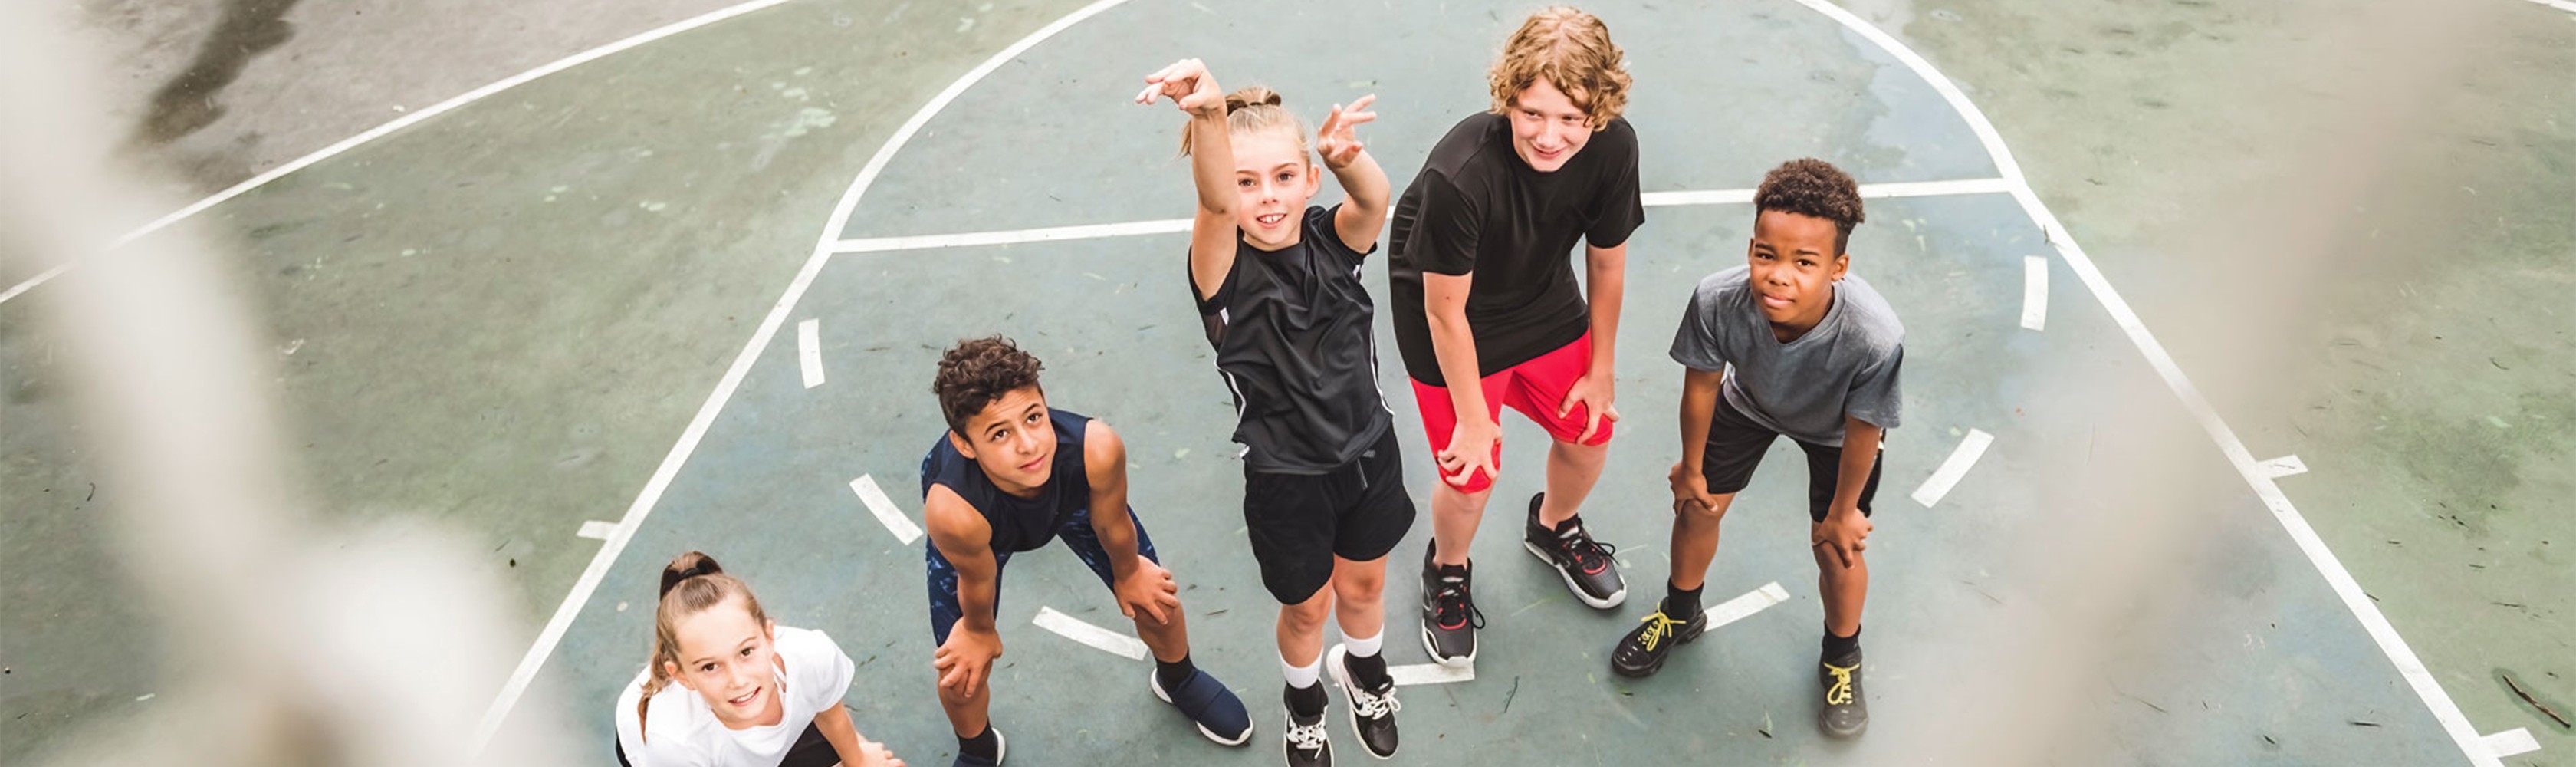 I bambini giocano sul campo da basket e sognano una carriera sportiva di alto livello.